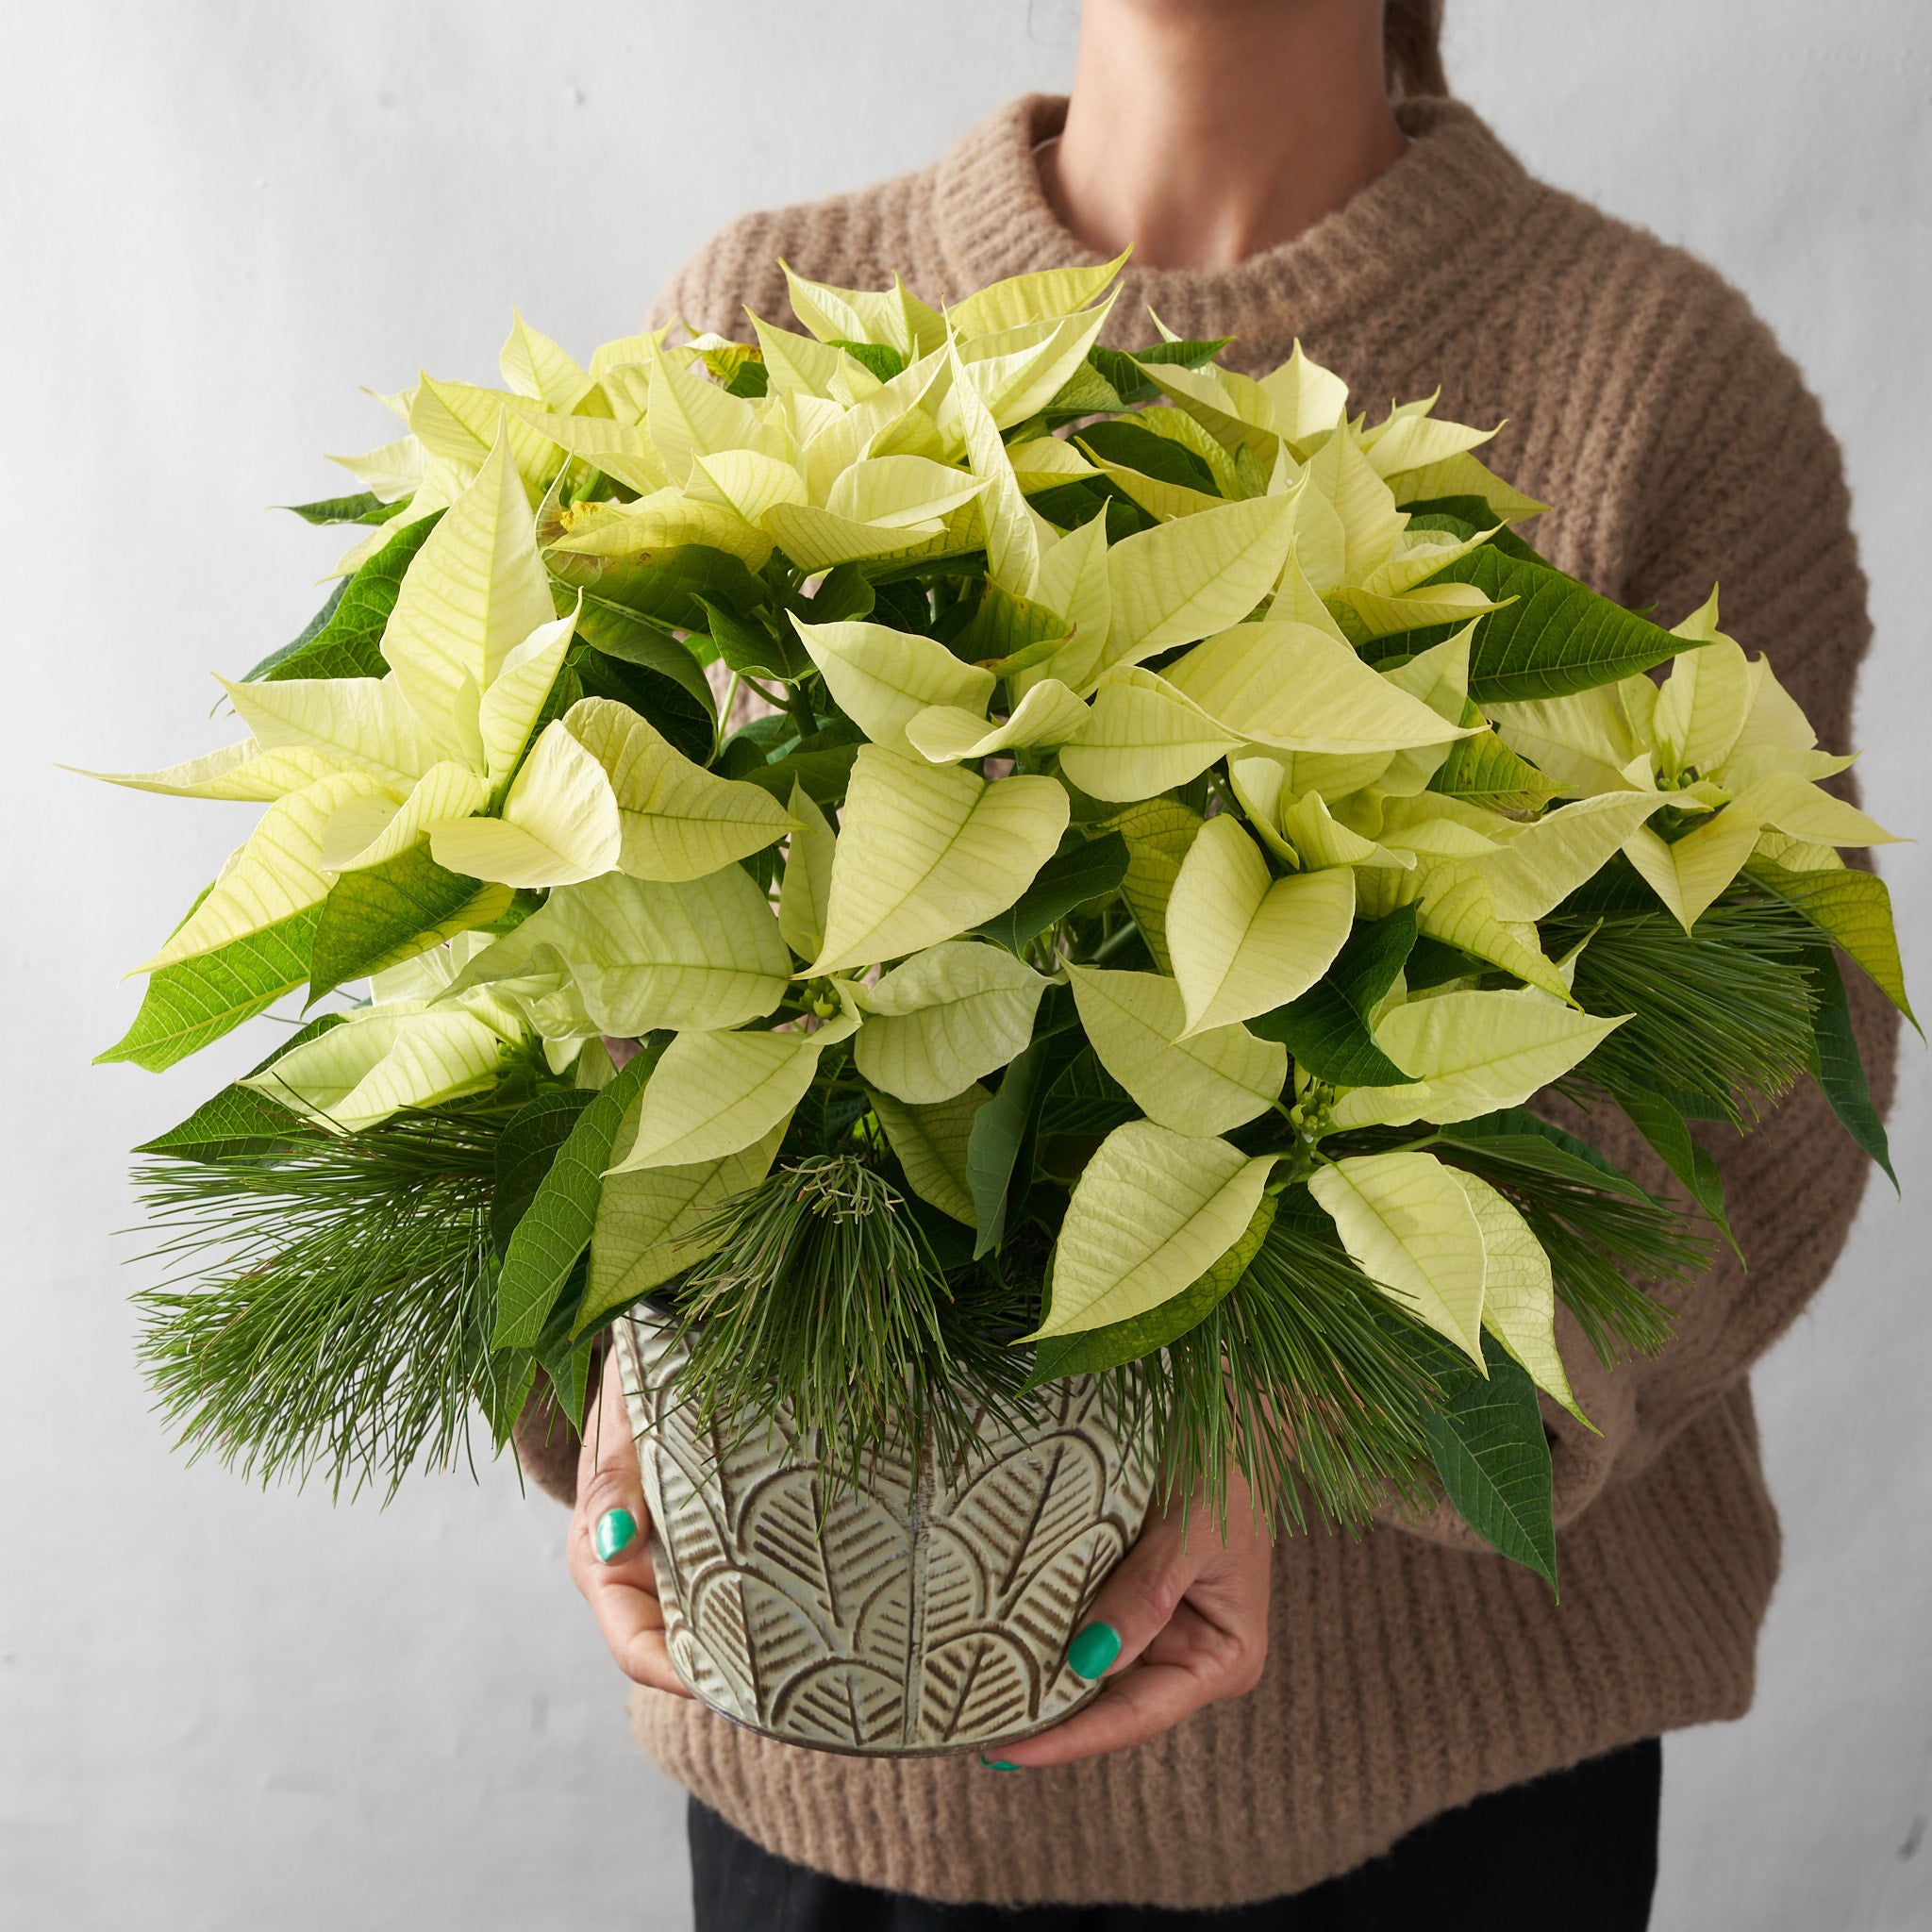 Person holding white poinsettia plant.